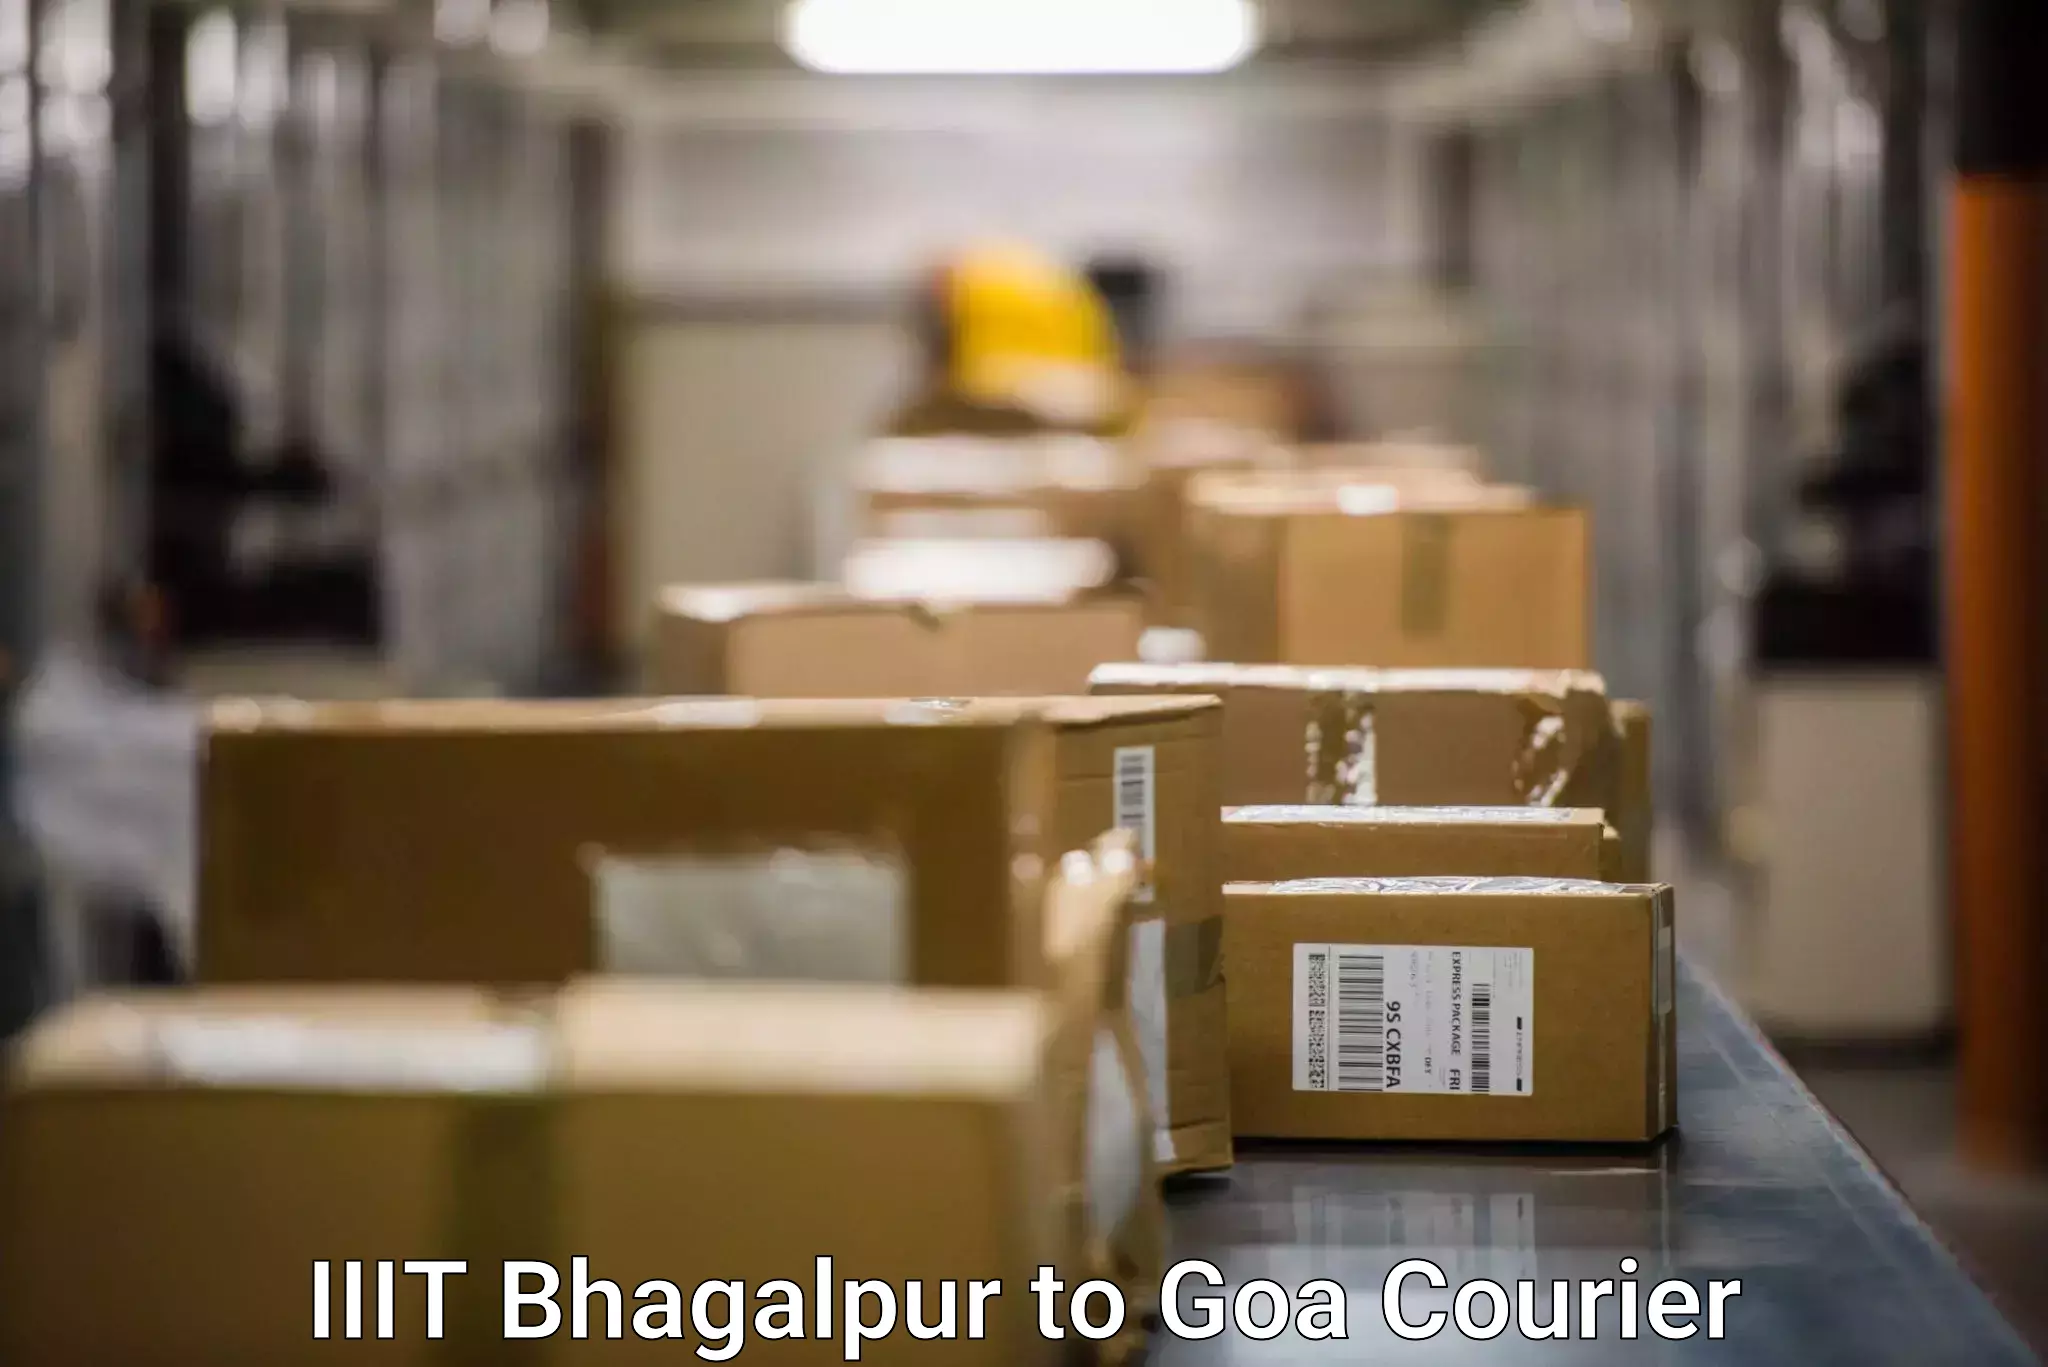 Next-day freight services IIIT Bhagalpur to Bicholim